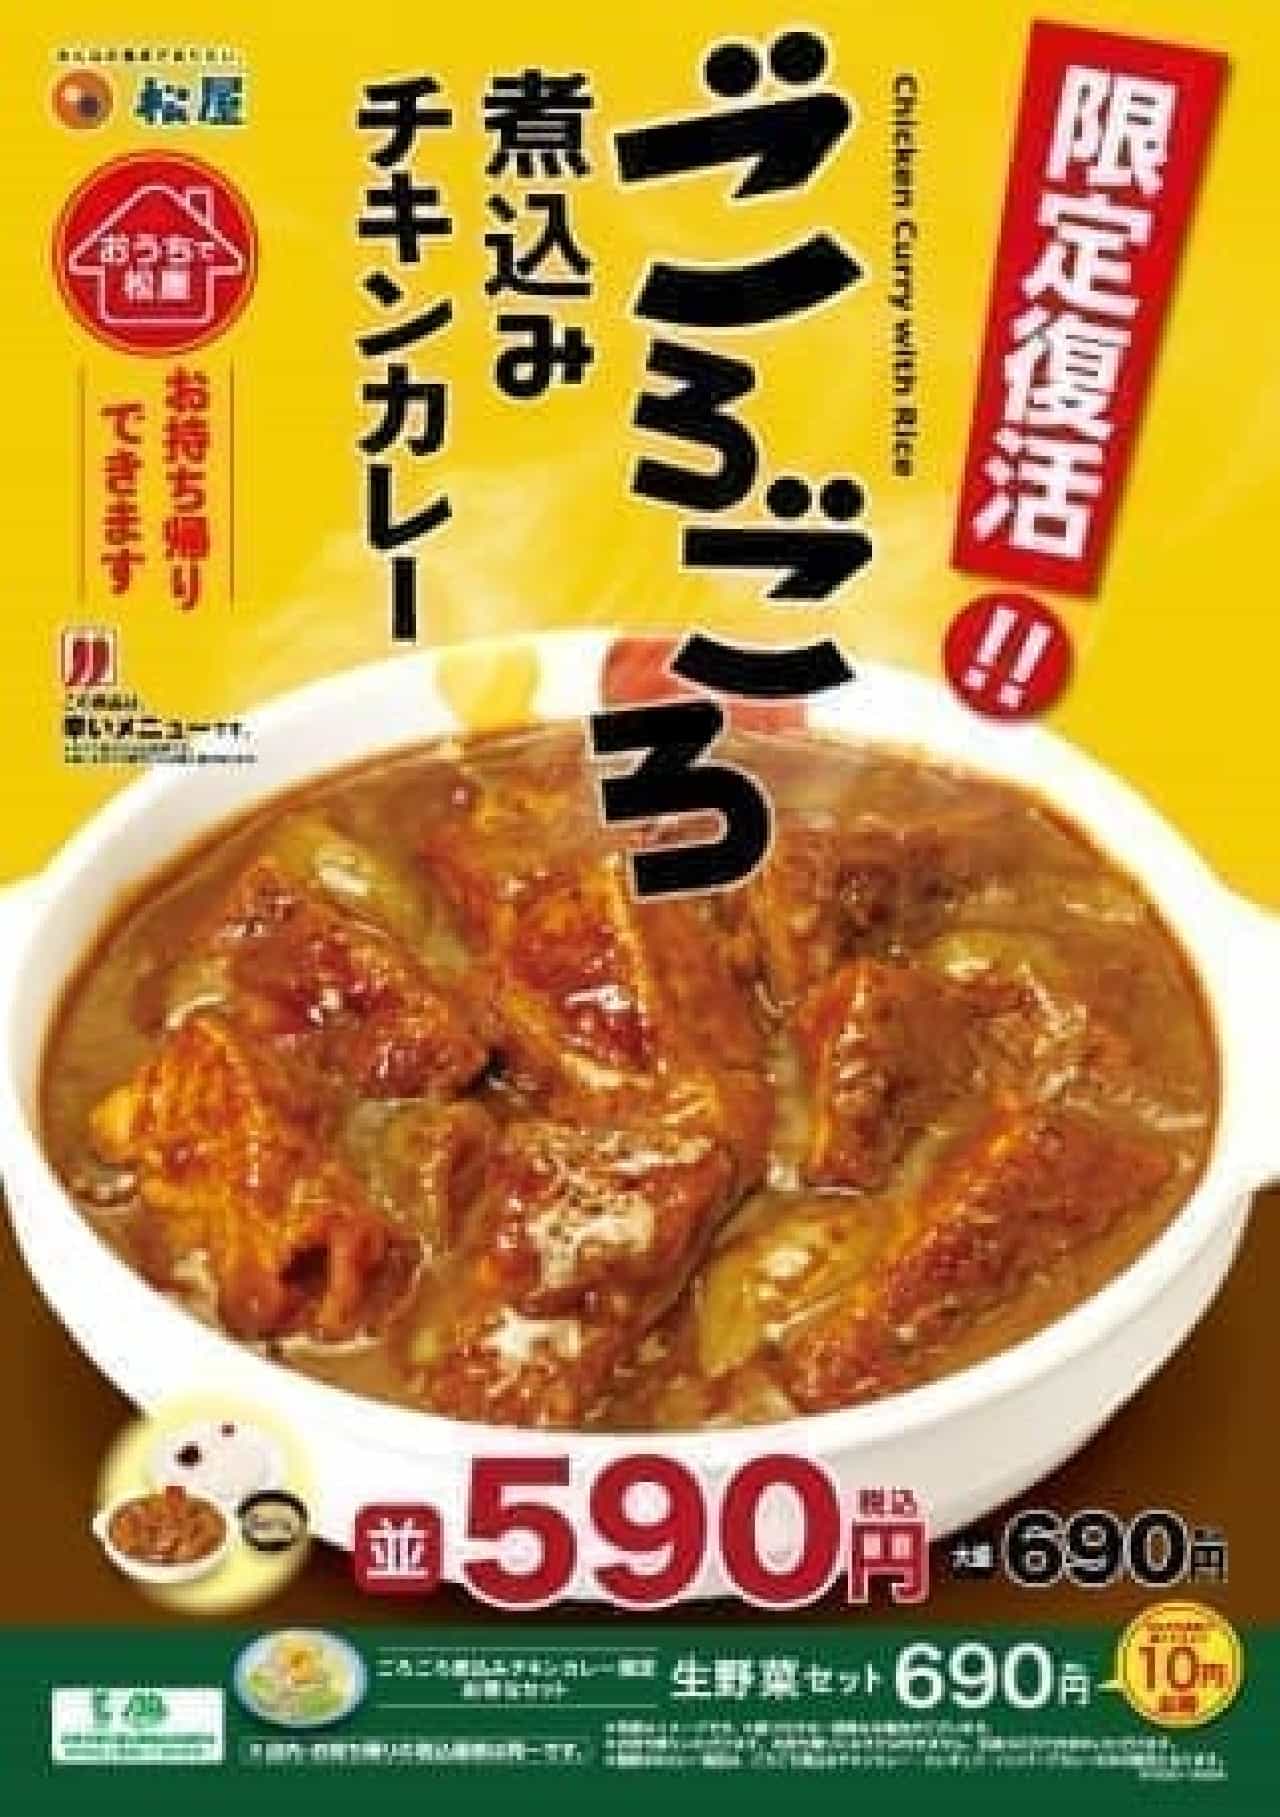 "Chicken curry stewed around" revived in Matsuya